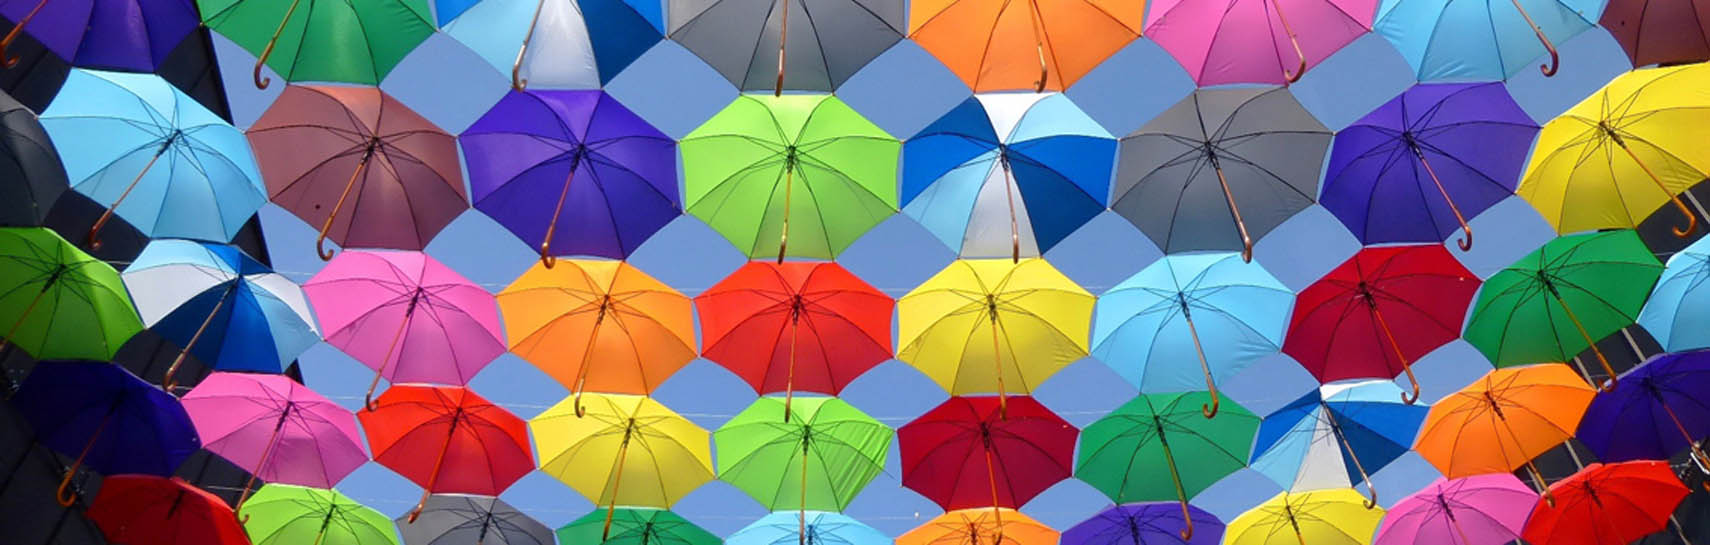 Hunderte bunte Regenschirme liegen auf Leinen, die zwischen Häusern gespannt sind